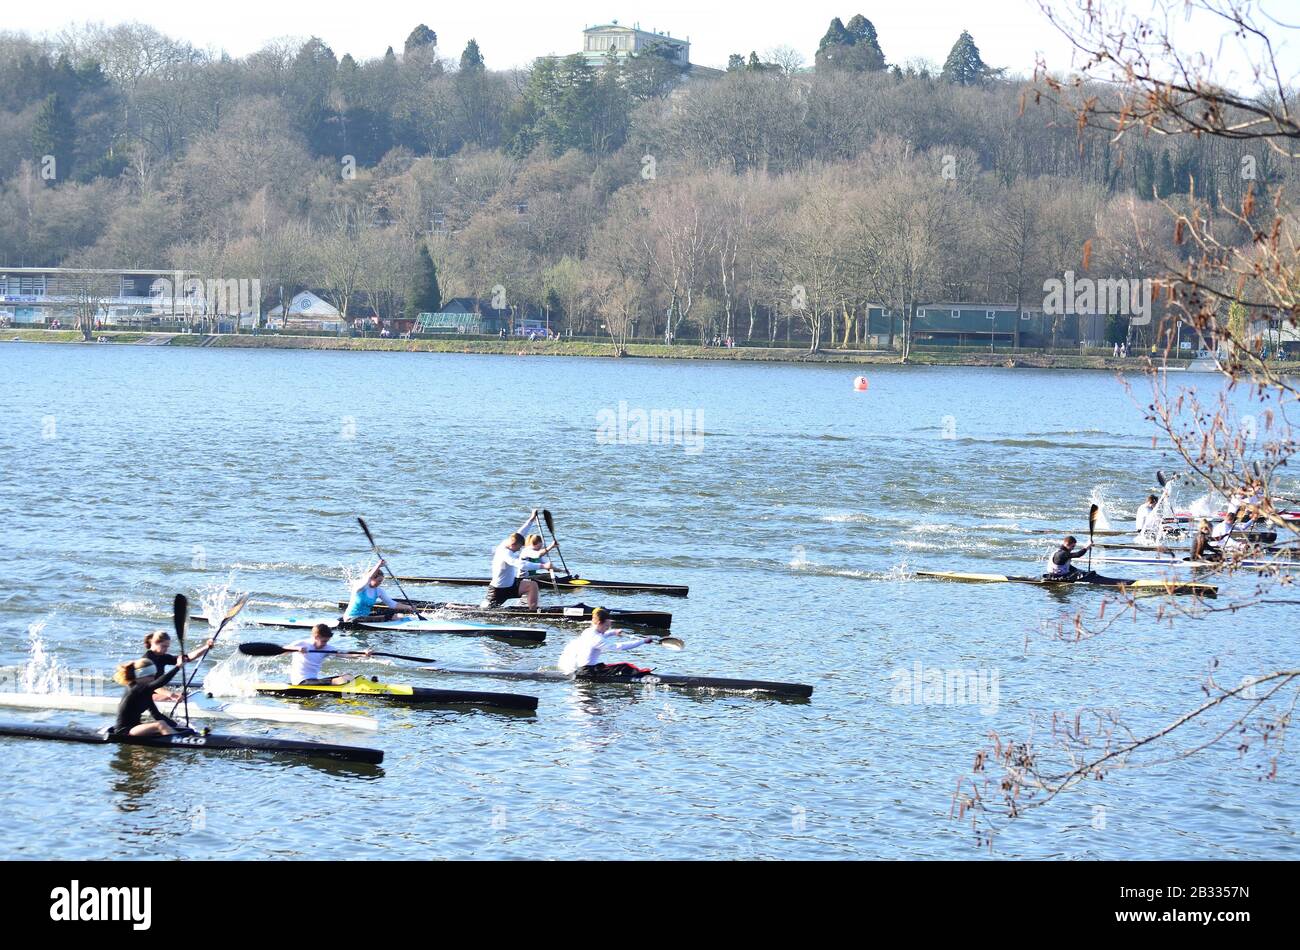 Essen, Germany - March, 10, 2014: Rowing training of canoeists in Essen Werden on the reservoir Baldeney. Stock Photo